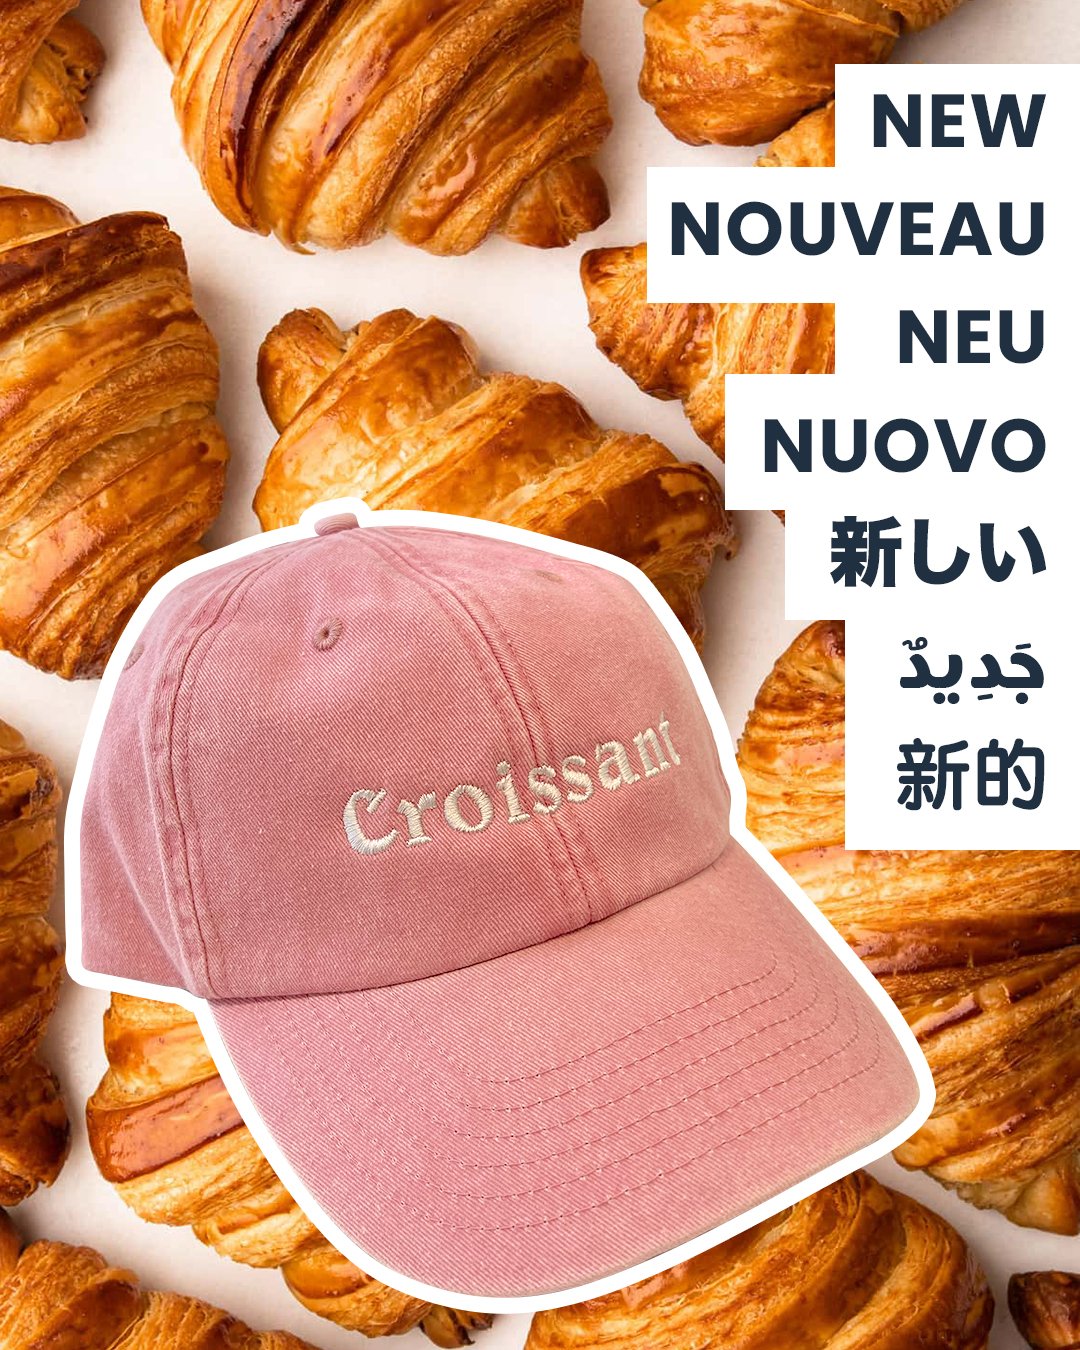 Image of Croissant Cap